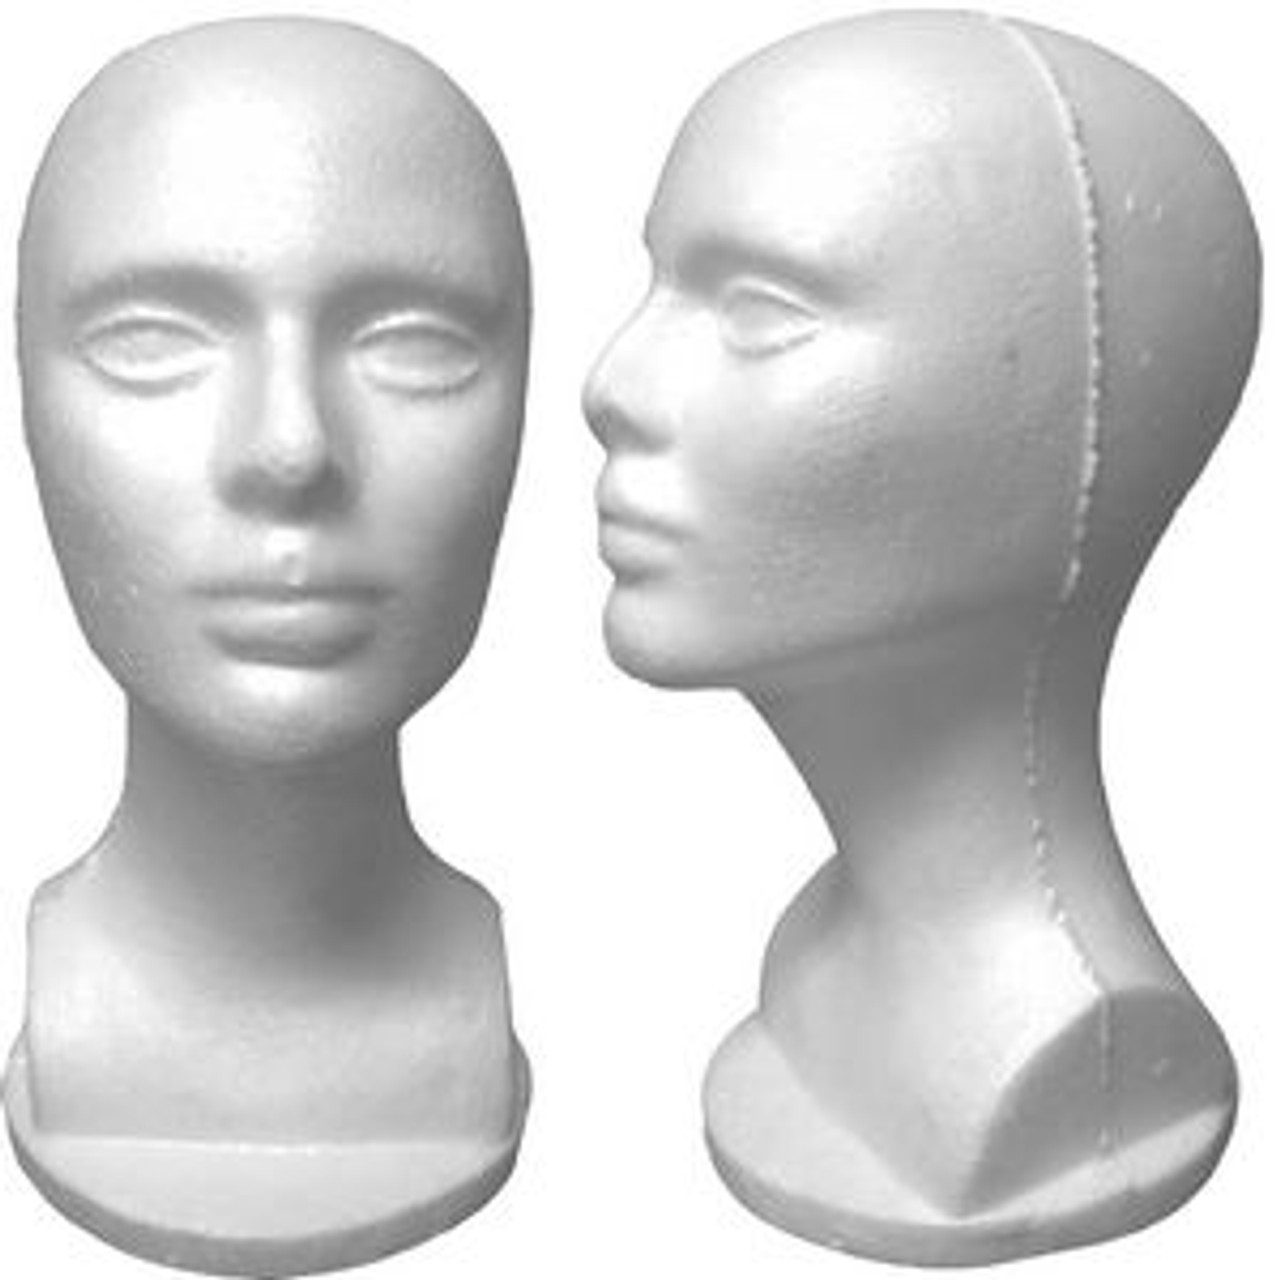 4 White Female Styrofoam Mannequin Head Bust MM-434